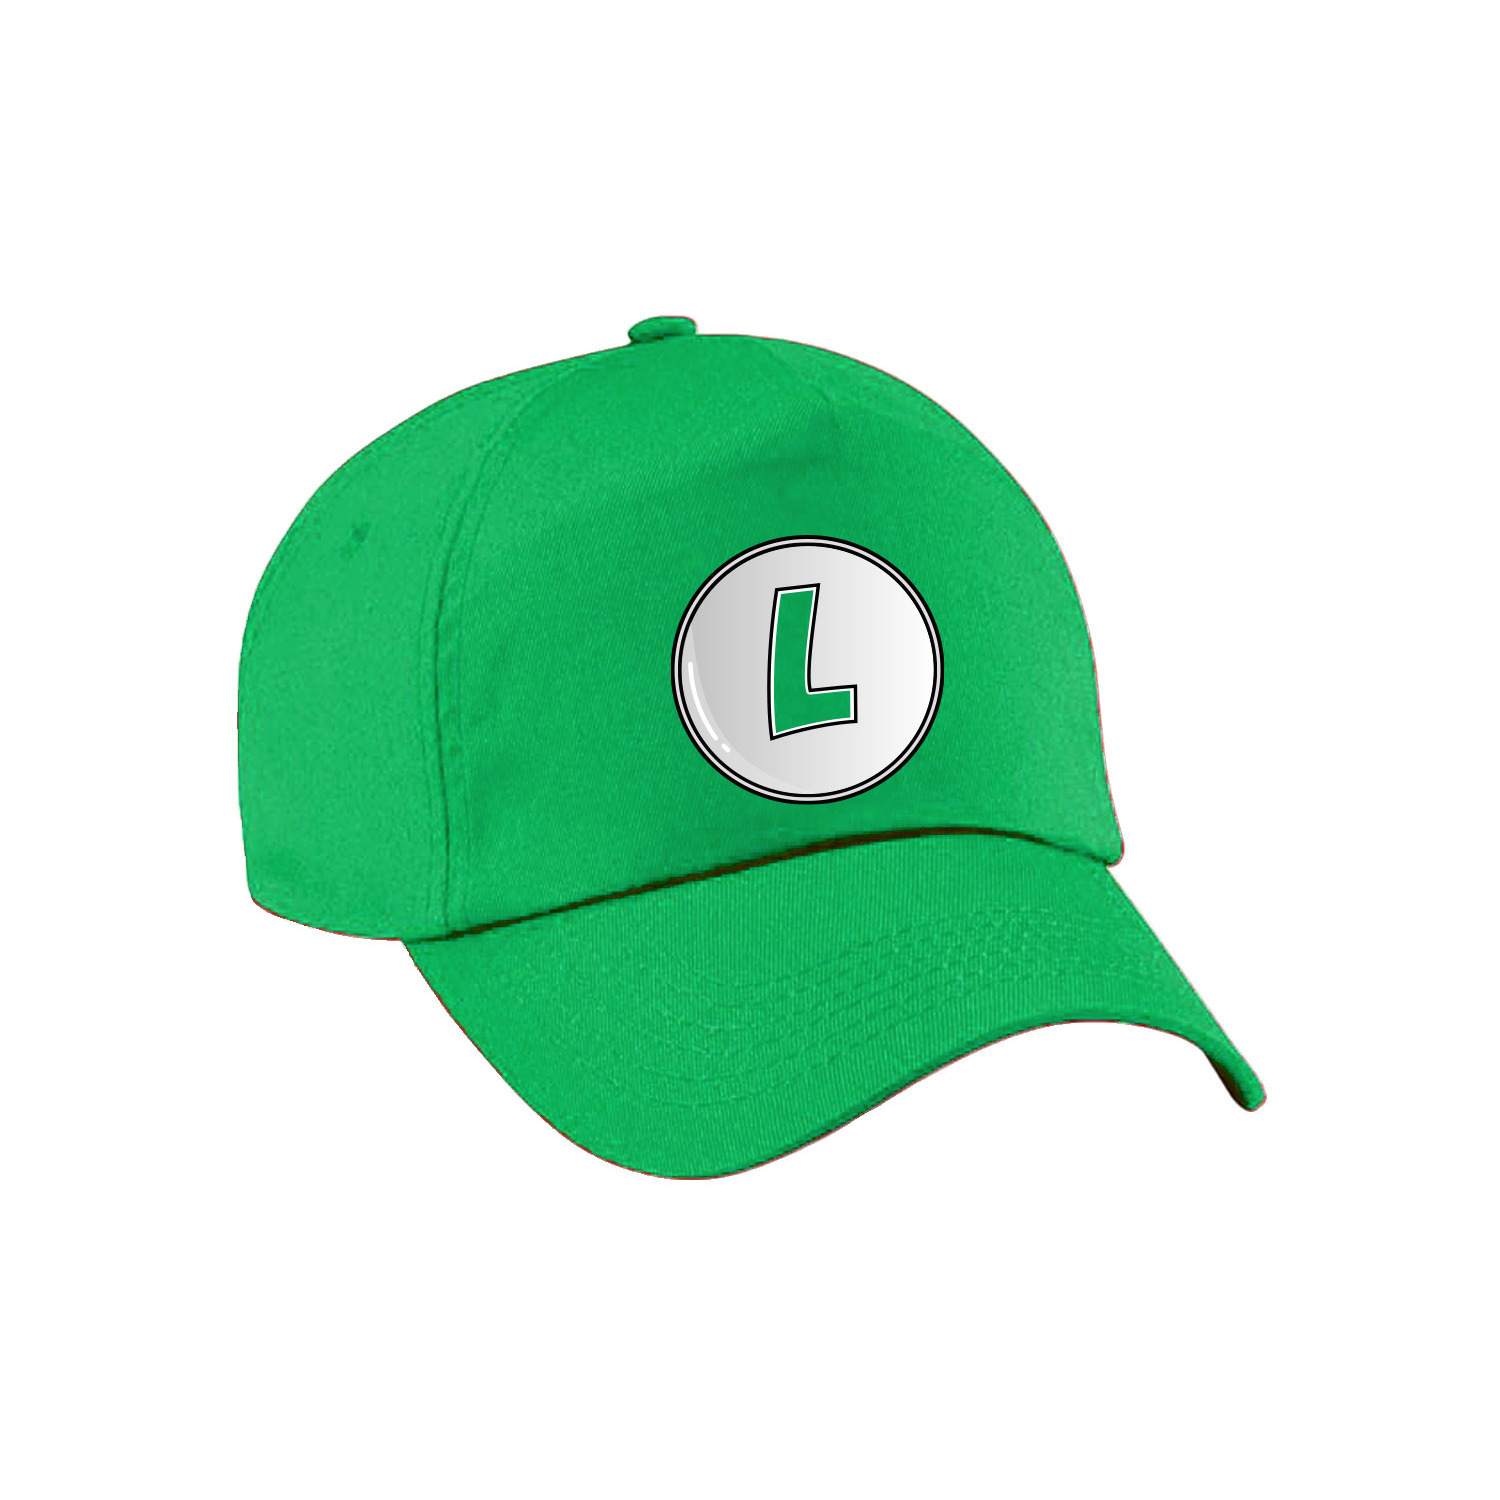 Afbeelding van Game verkleed pet - loodgieter Luigi - groen - kinderen - unisex - carnaval/themafeest outfit